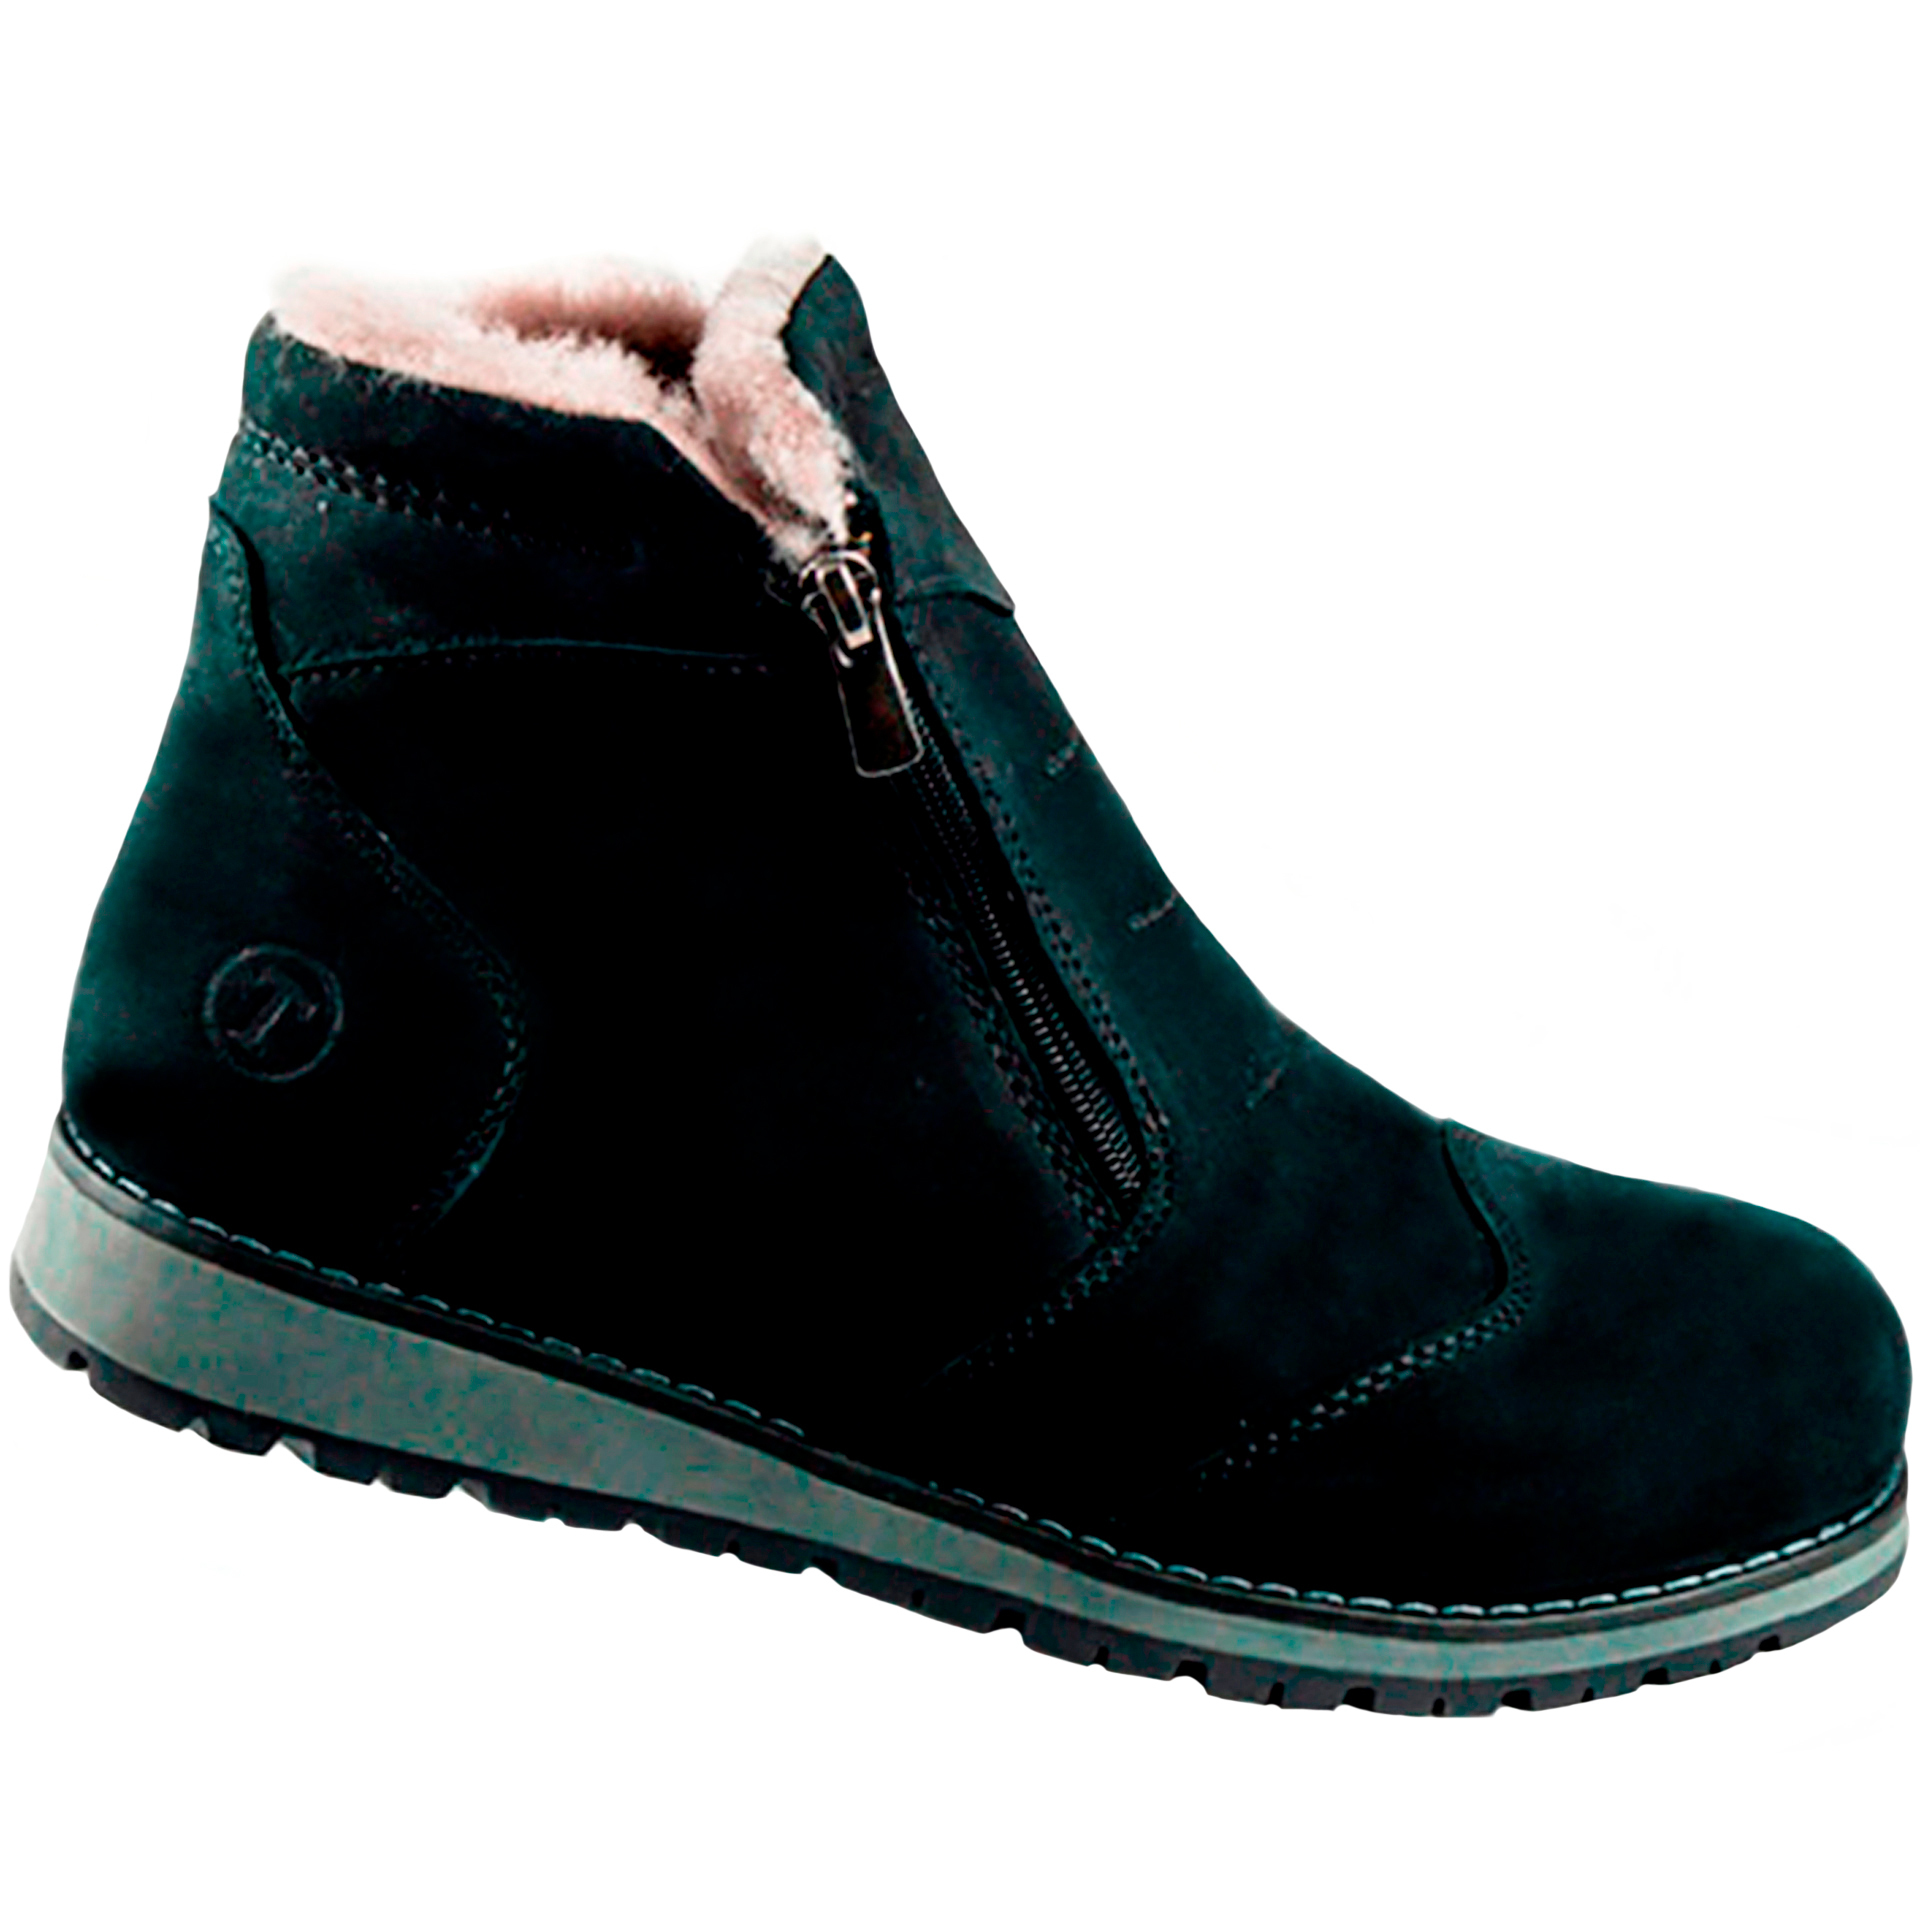 Зимние ботинки на подростков (1278) материал Нубук, цвет Черный  для мальчиков 37-40 размеры – Sole Kids